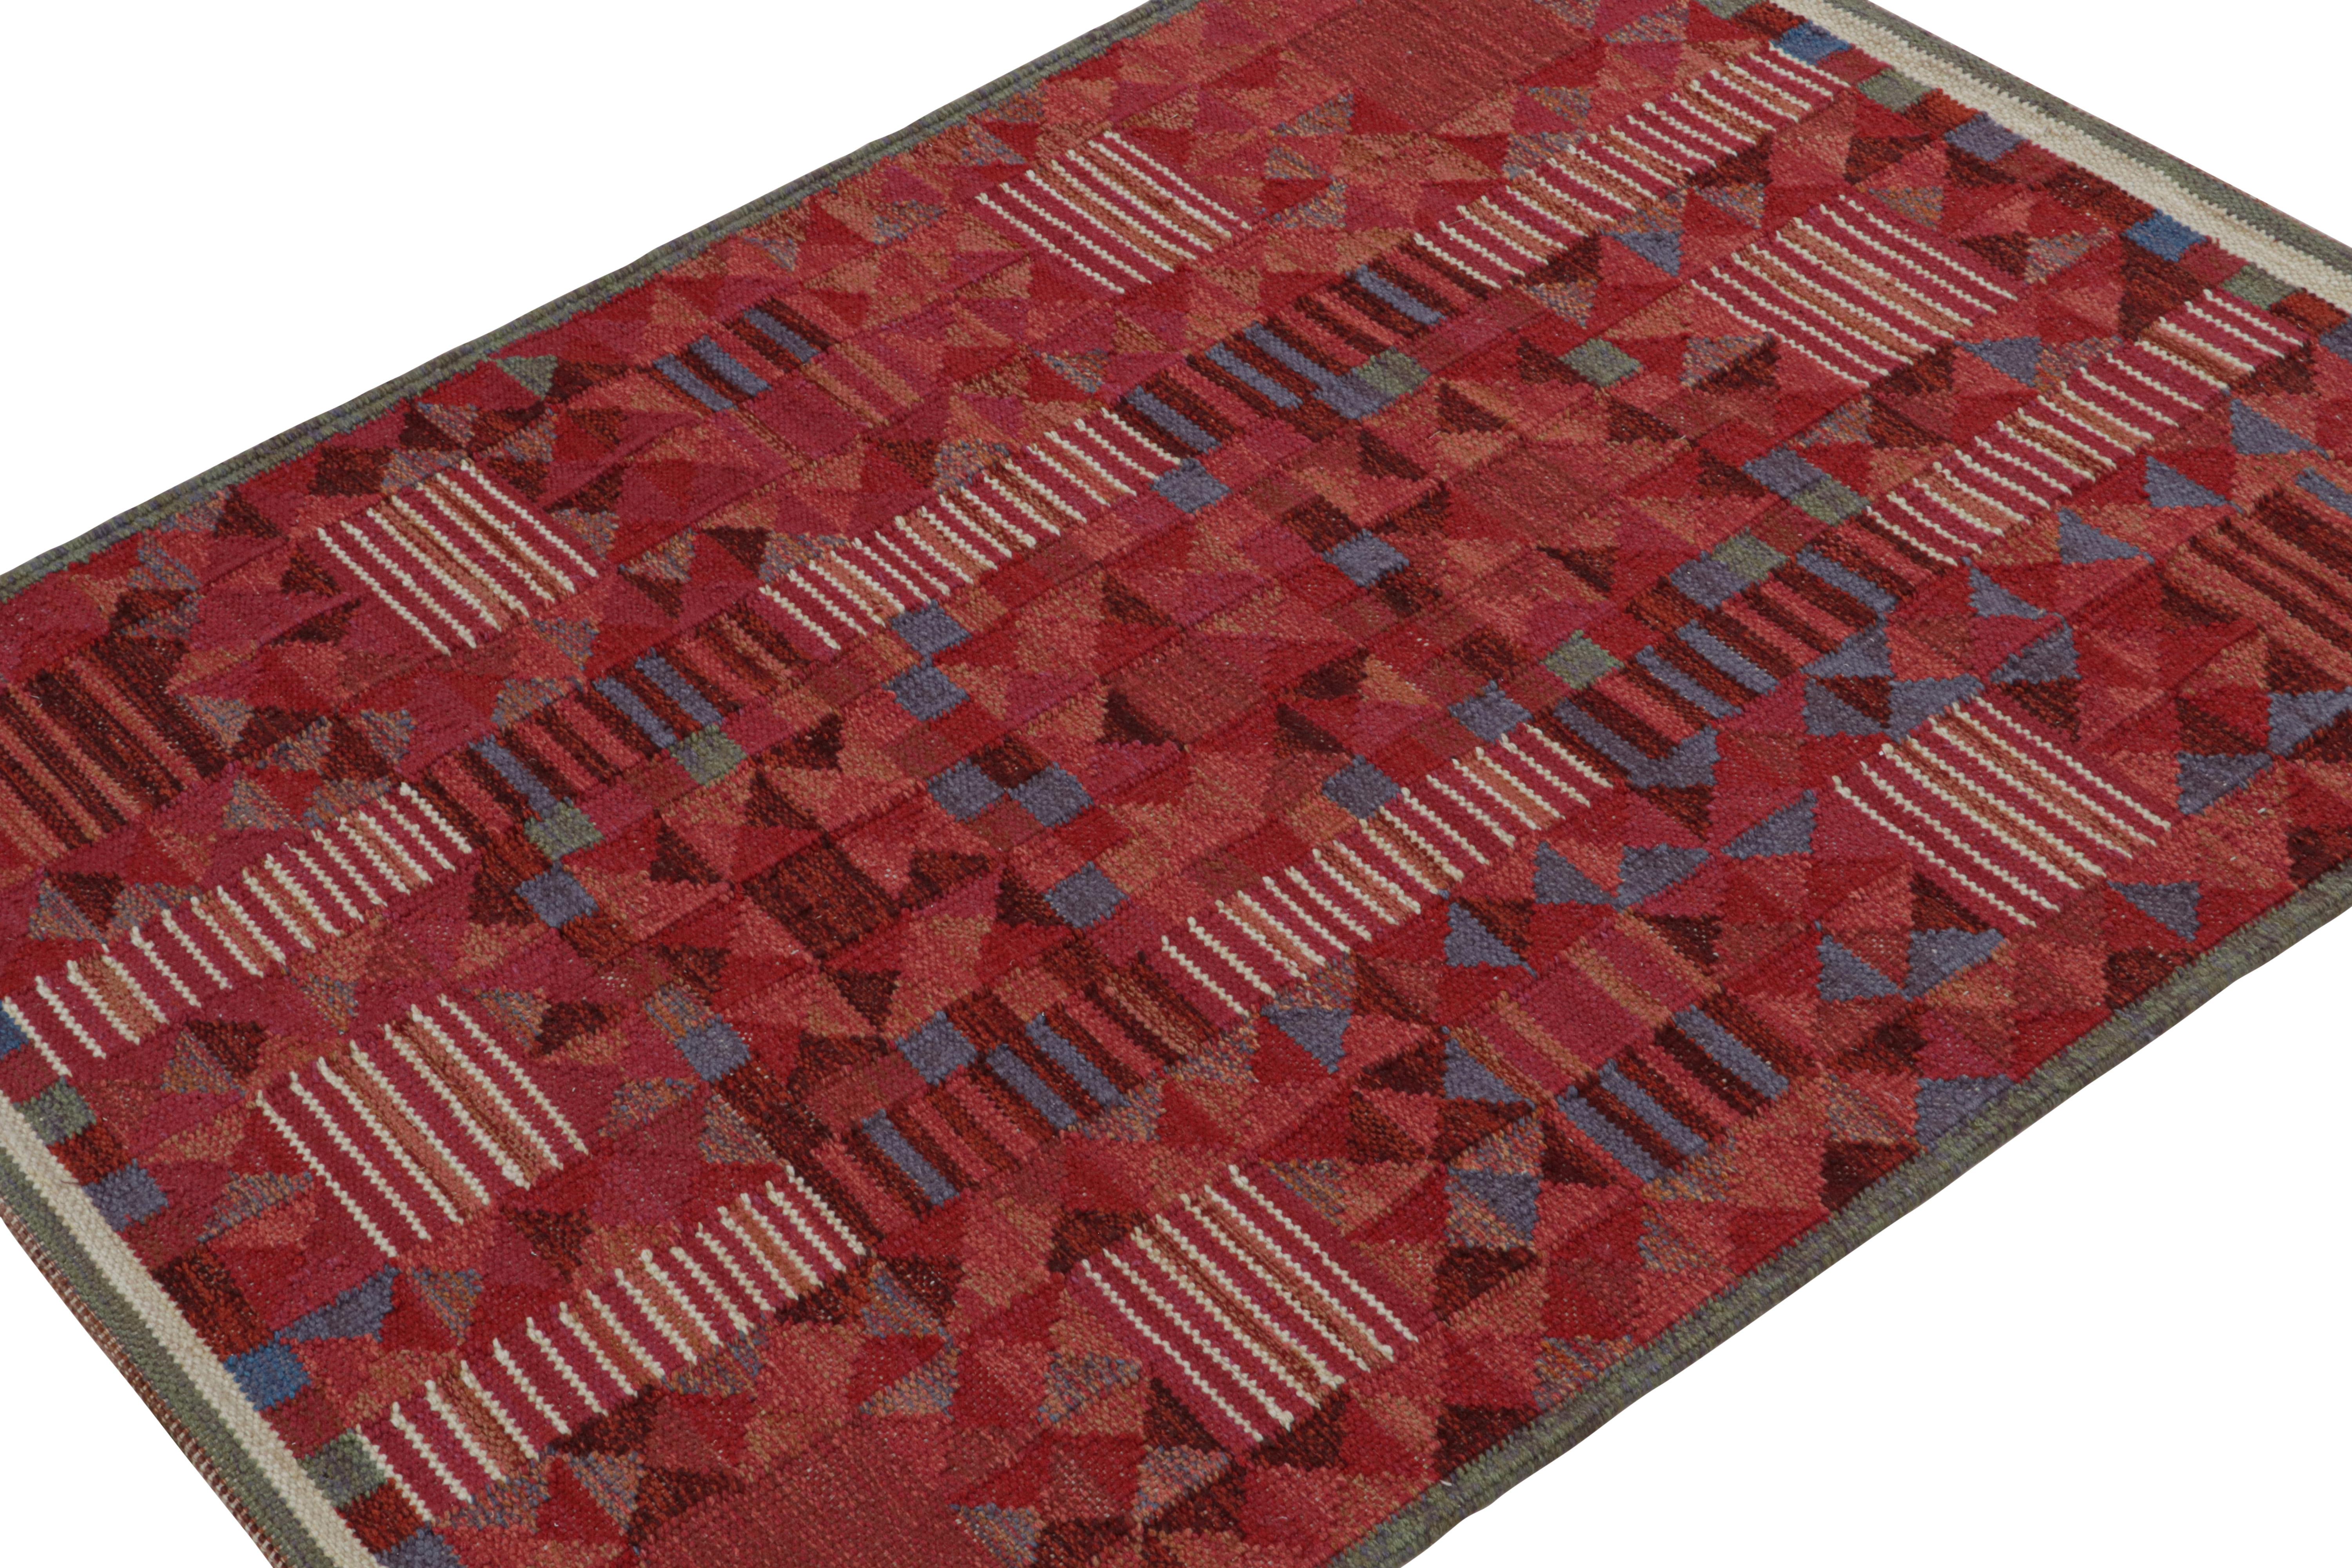 Ce modèle de kilim personnalisé de style suédois est issu de la collection de tapis scandinaves primés de Rug & Kilim.

Sur le Design : 

Ces photos représentent un tissage plat personnalisé 5x7 récemment vendu dans cette collection, tissé à la main